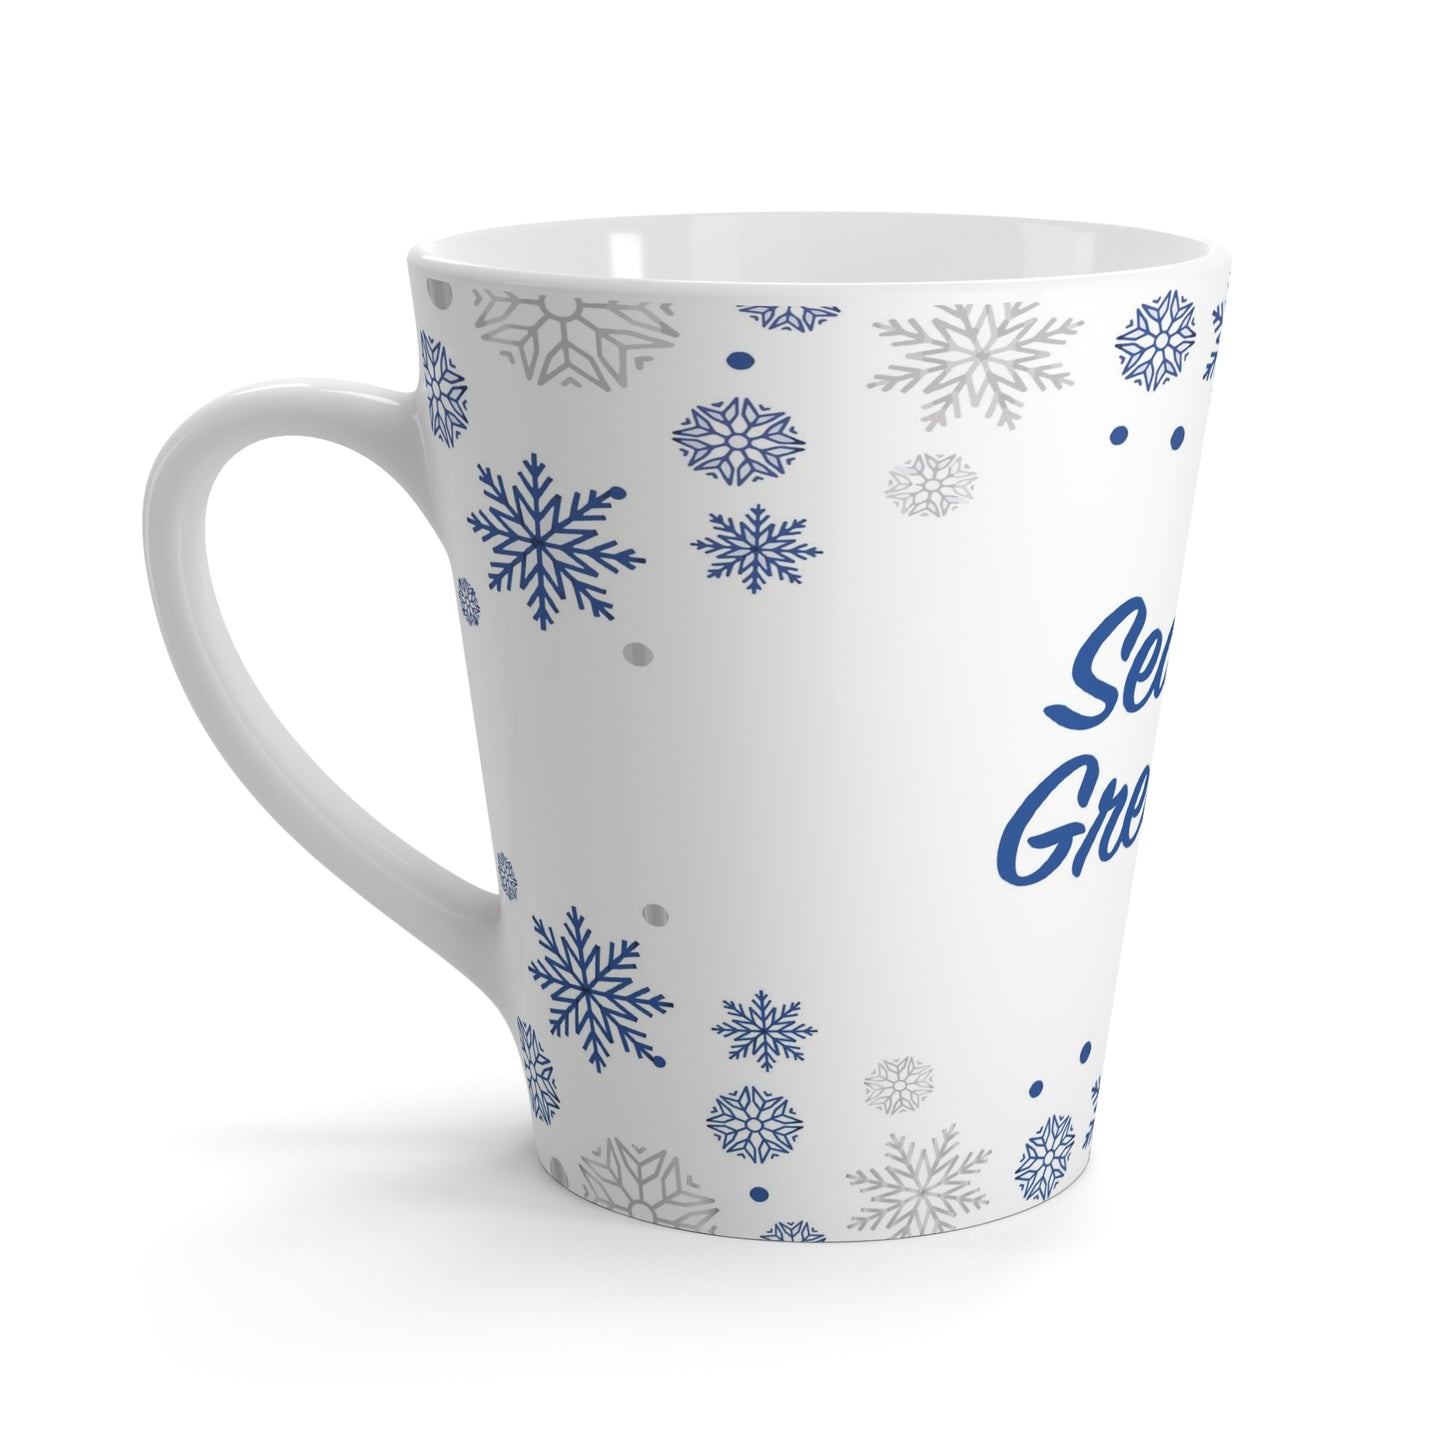 Festival Gifts Latte Coffee Mugs, 12oz, Season's Greetings Coffee Latte Mugs